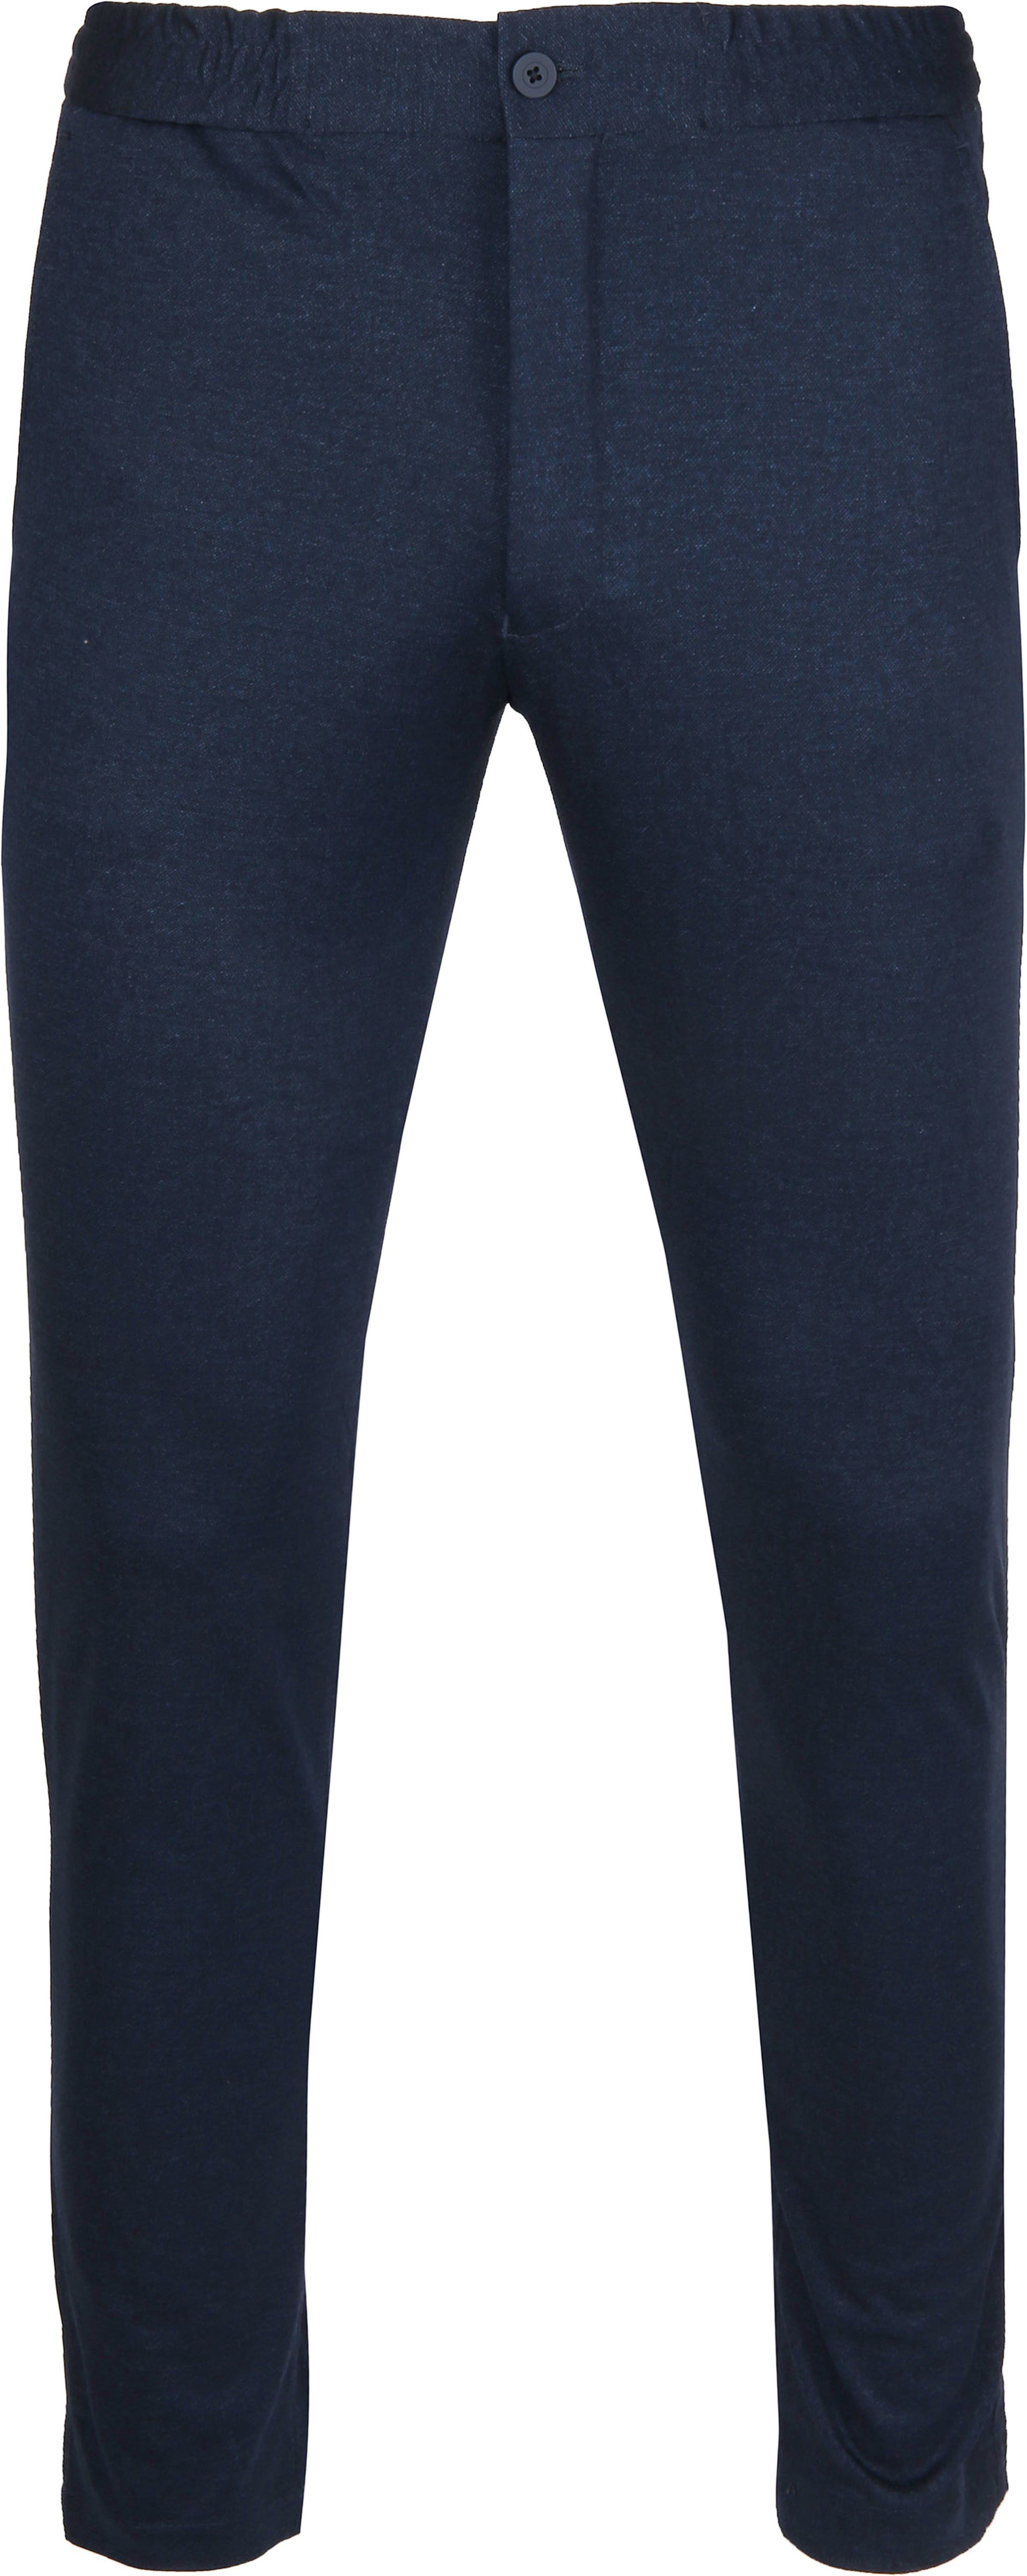 Suitable Jog Trousers Navy Dark Blue Blue size 38-R